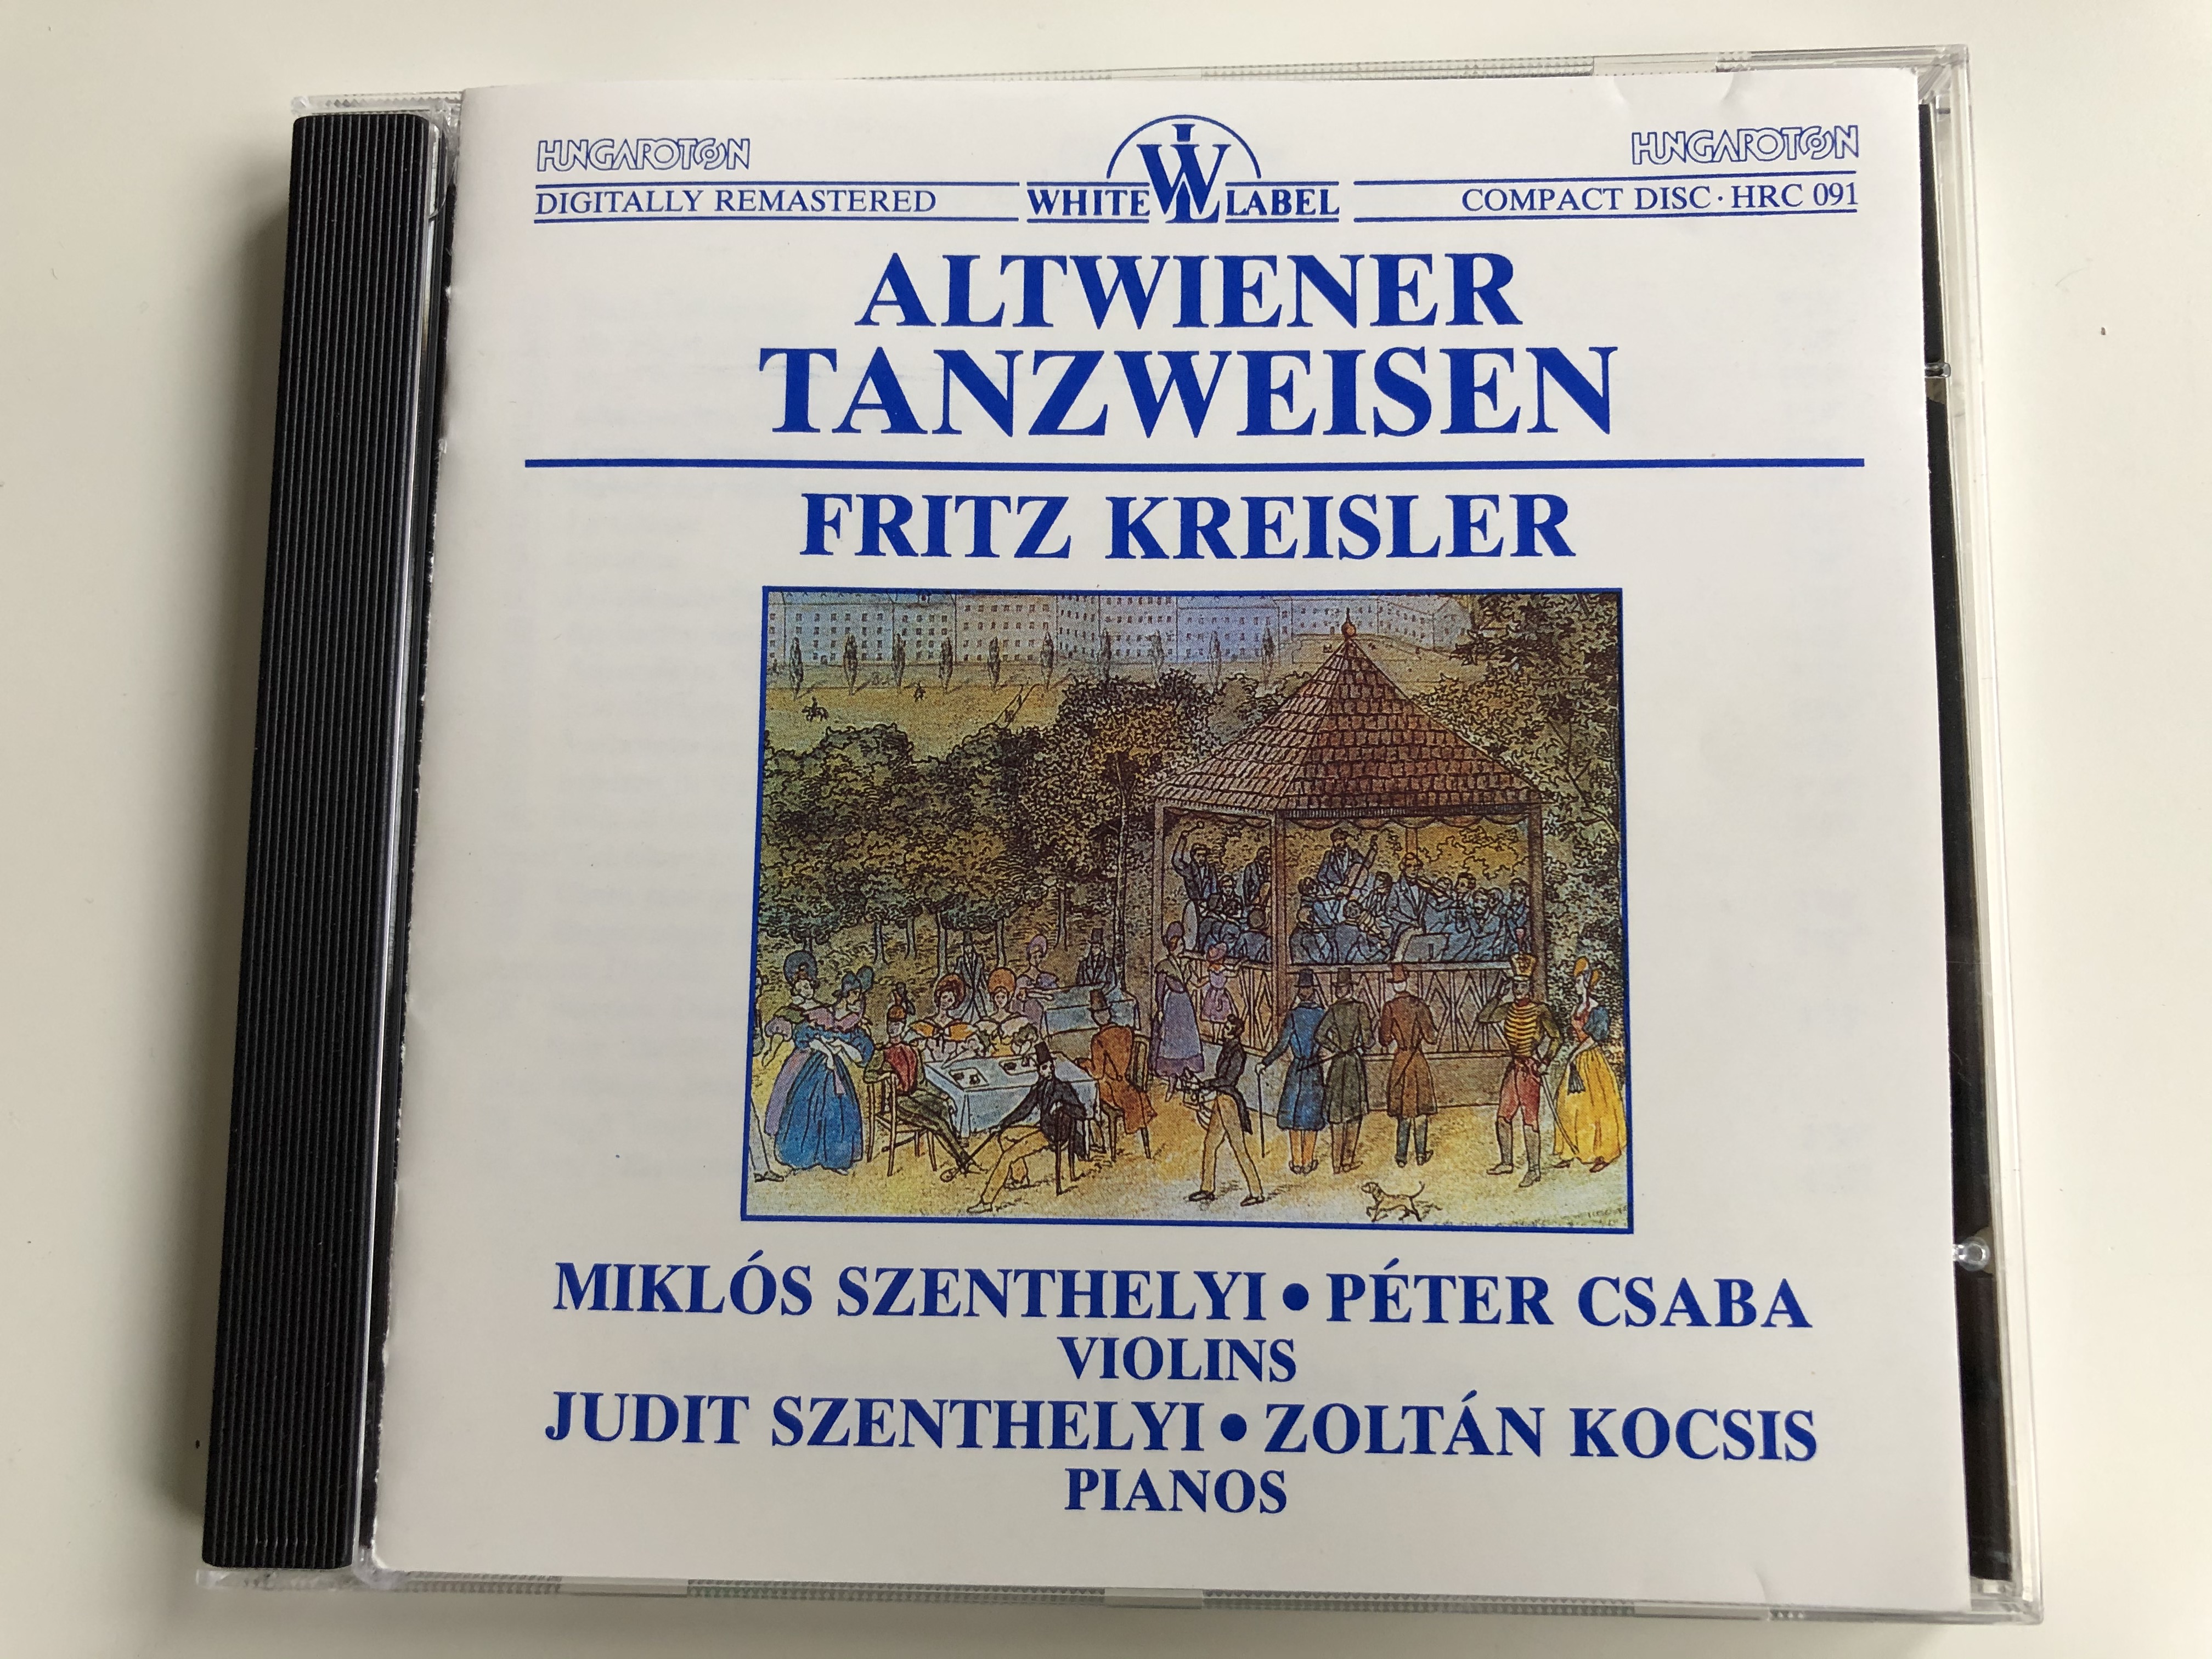 altwiener-tanzweisen-fritz-kreisler-miklos-szenthelyi-peter-csaba-violins-judit-szenthelyi-zoltan-kocsis-pianos-hungaroton-audio-cd-1988-stereo-hrc-091-1-.jpg